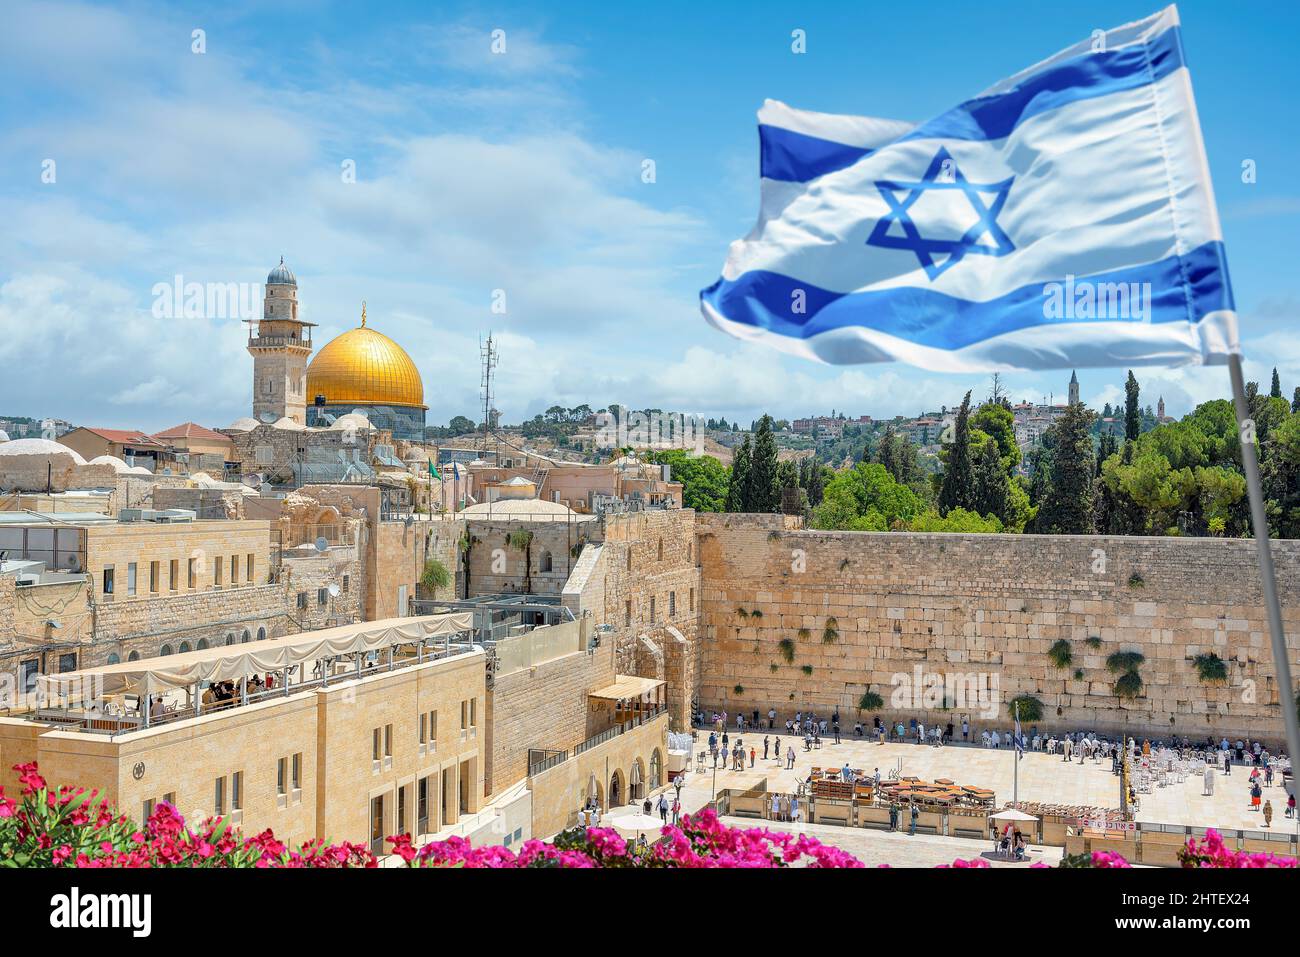 Un drapeau israélien souffle dans le vent tandis que les croyants orthodoxes juifs lisent la Torah et prient face au mur occidental, également connu sous le nom de mur de Wailing dans la vieille ville Banque D'Images